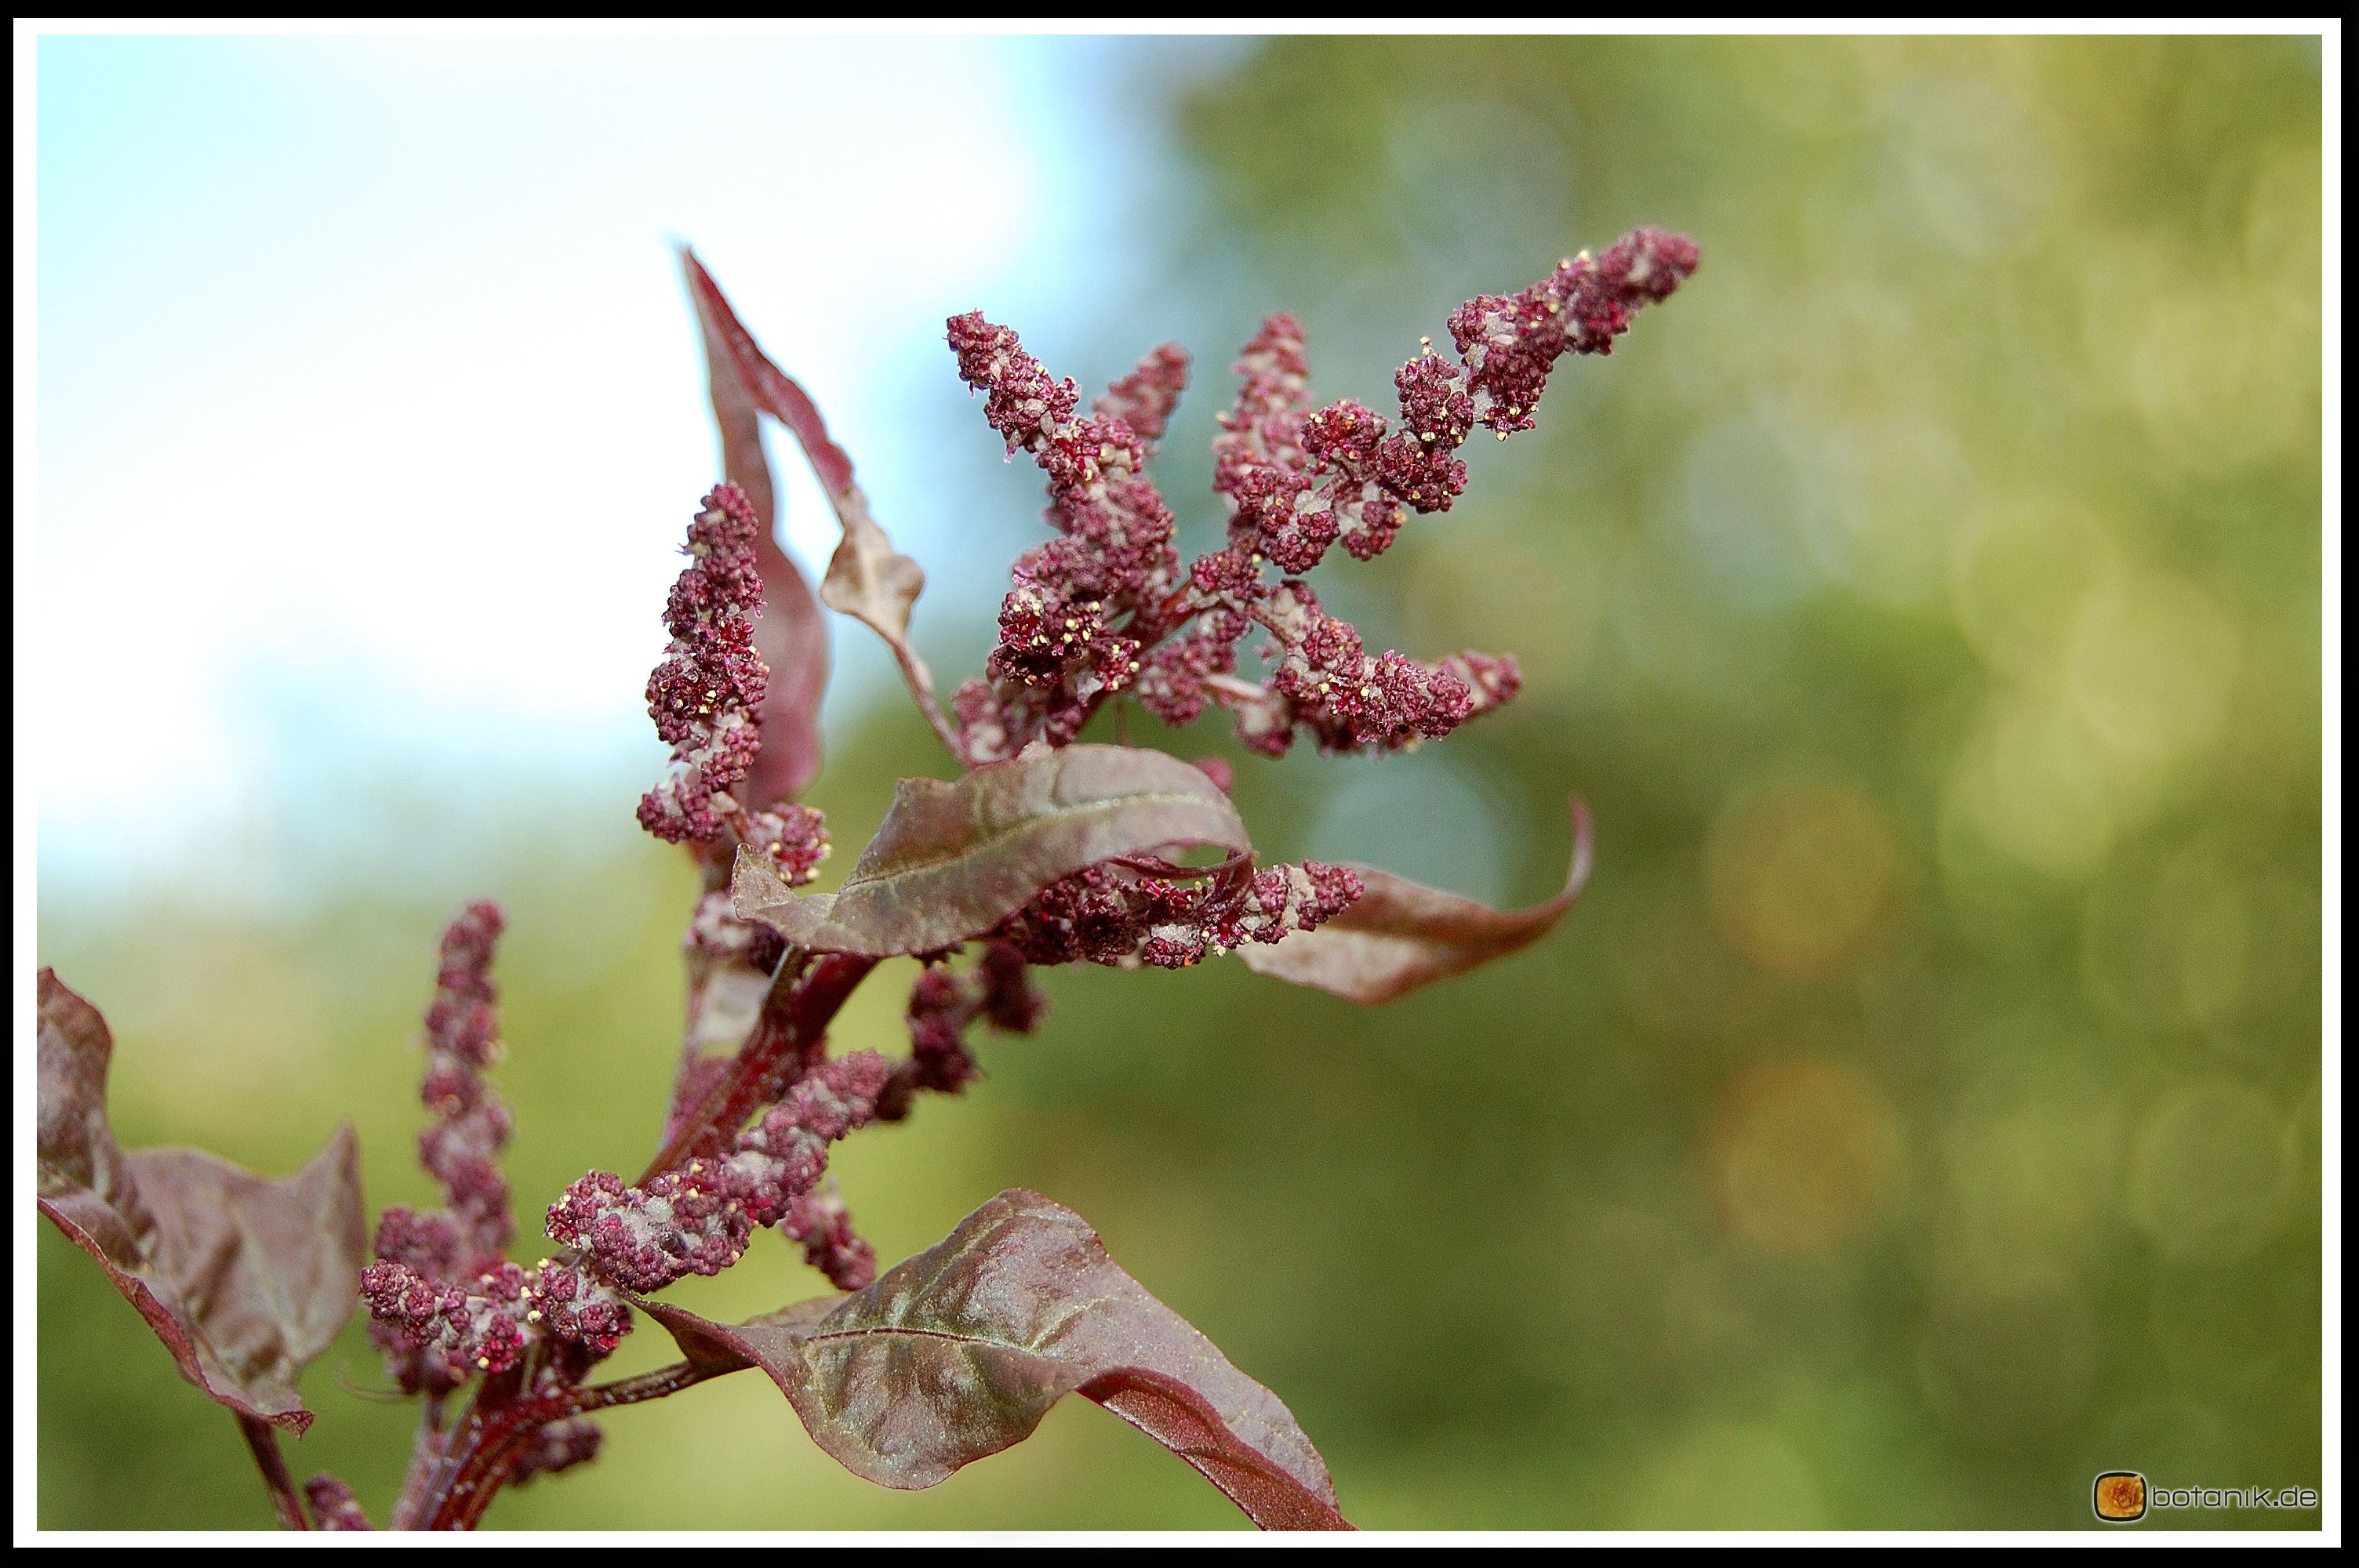 Atriplex hortensis 'purpurea' -- Gartenmelde 